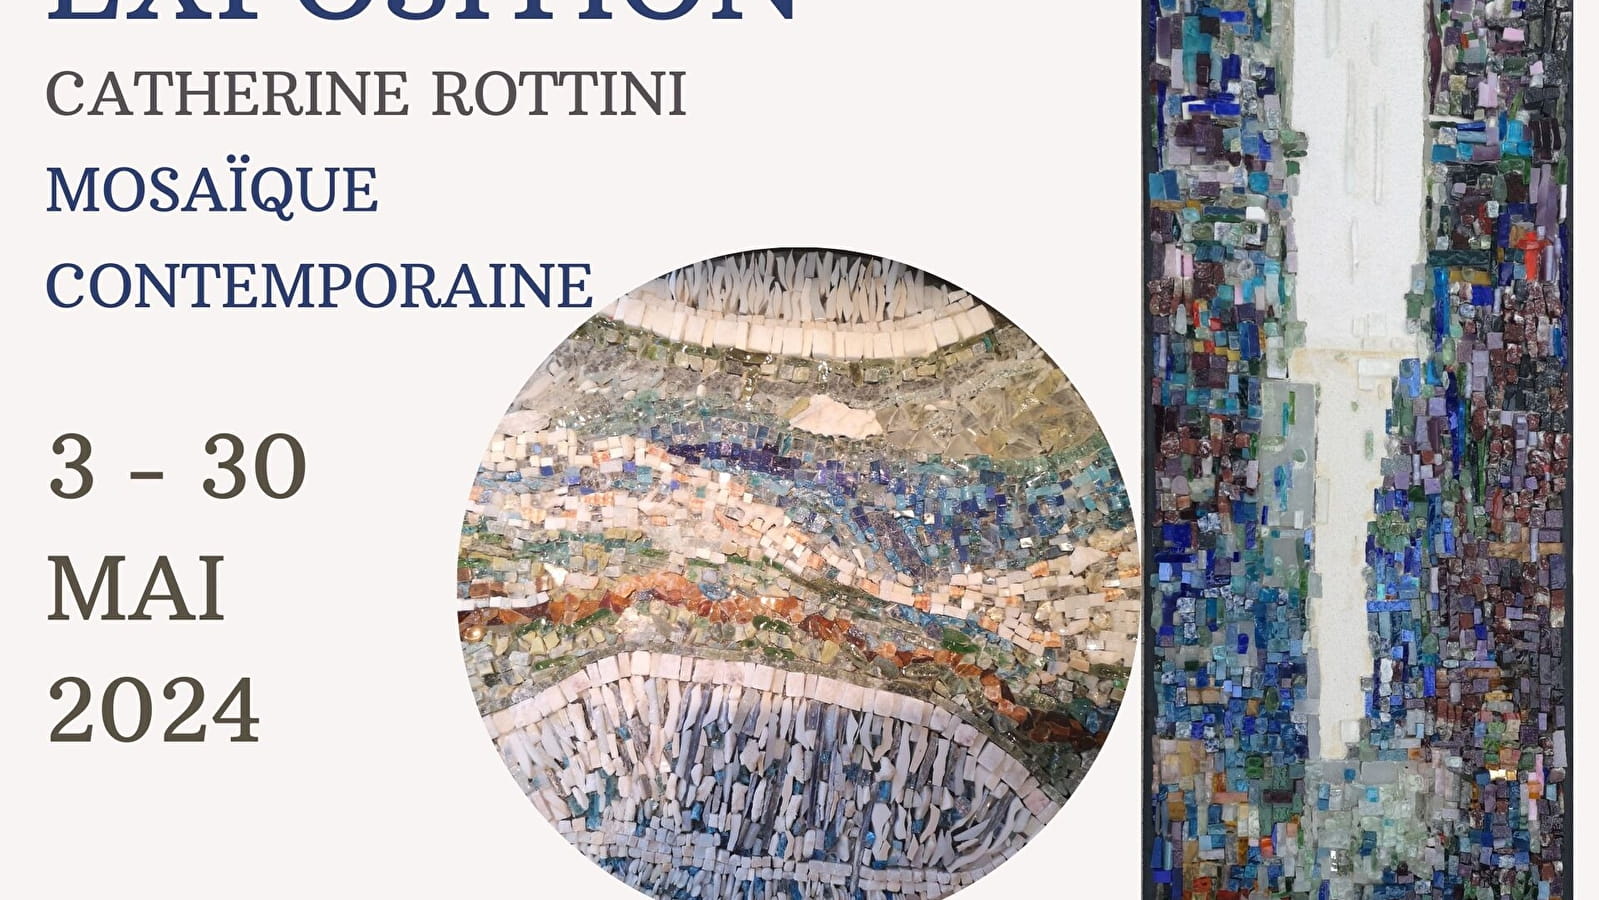 Zeitgenössische Mosaikausstellung von Catherine ROTTINI